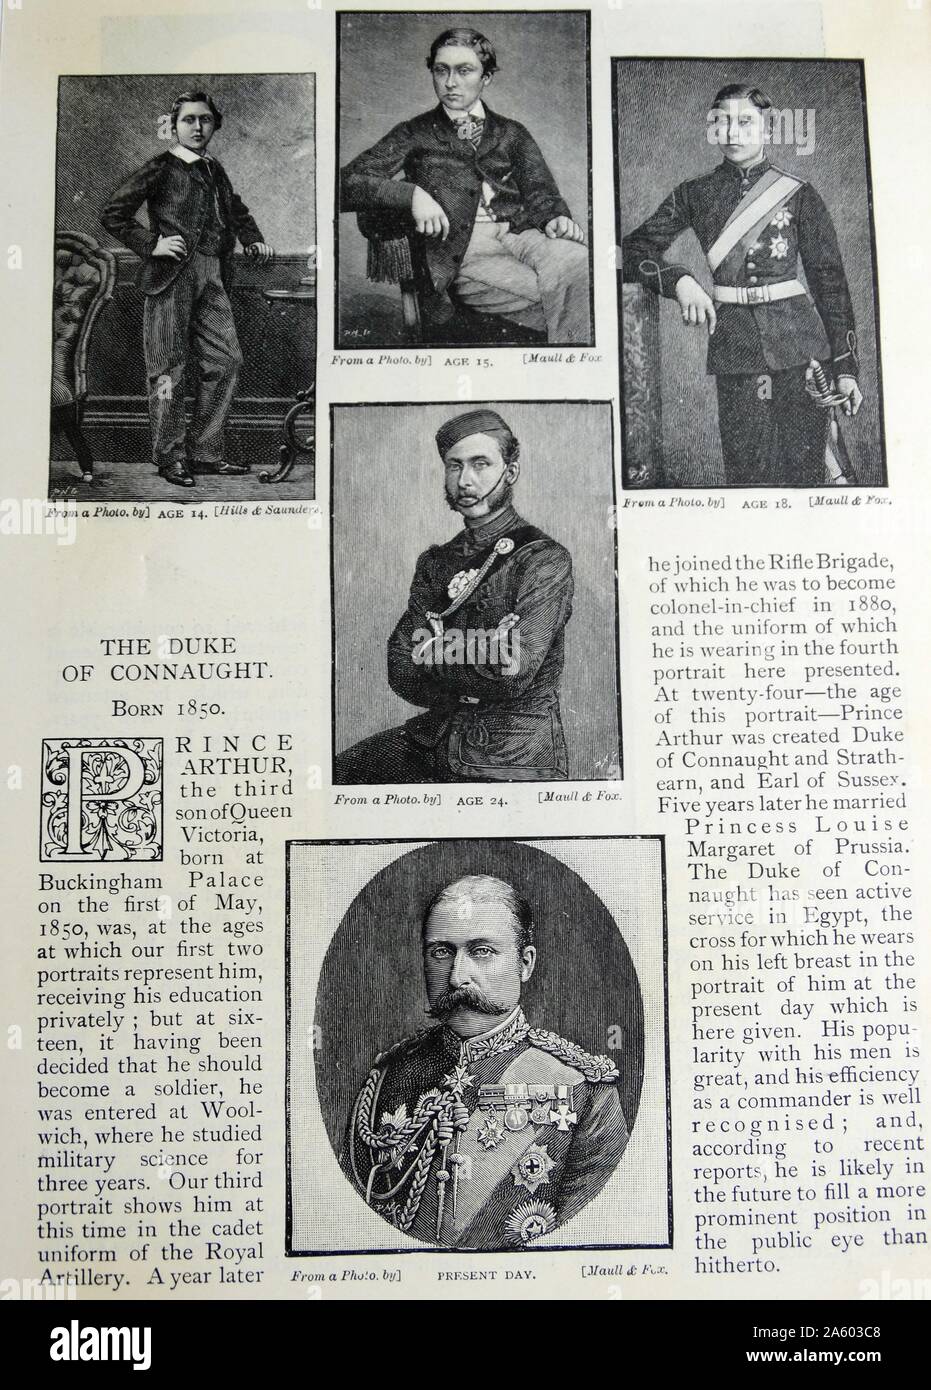 Retratos de el príncipe Arturo, Duque de Connaught y Strathearn (1850-1942), miembro de la familia real británica, que se desempeñó como Gobernador General de Canadá. Fecha del siglo XIX Foto de stock